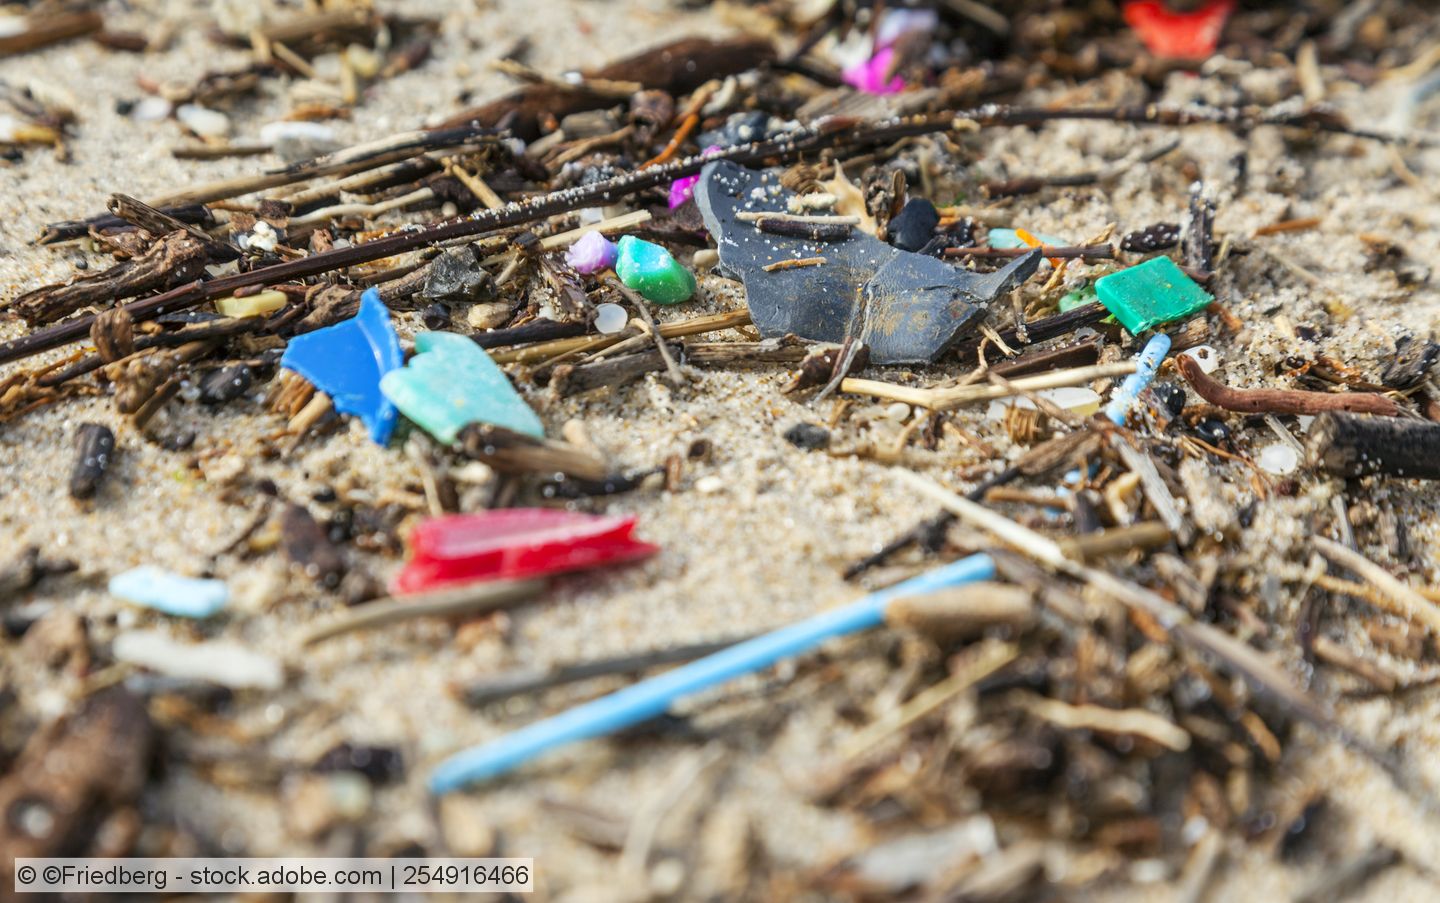 BfG erforscht bisher unbekannte Formen der Plastikverschmutzung von Gewässern